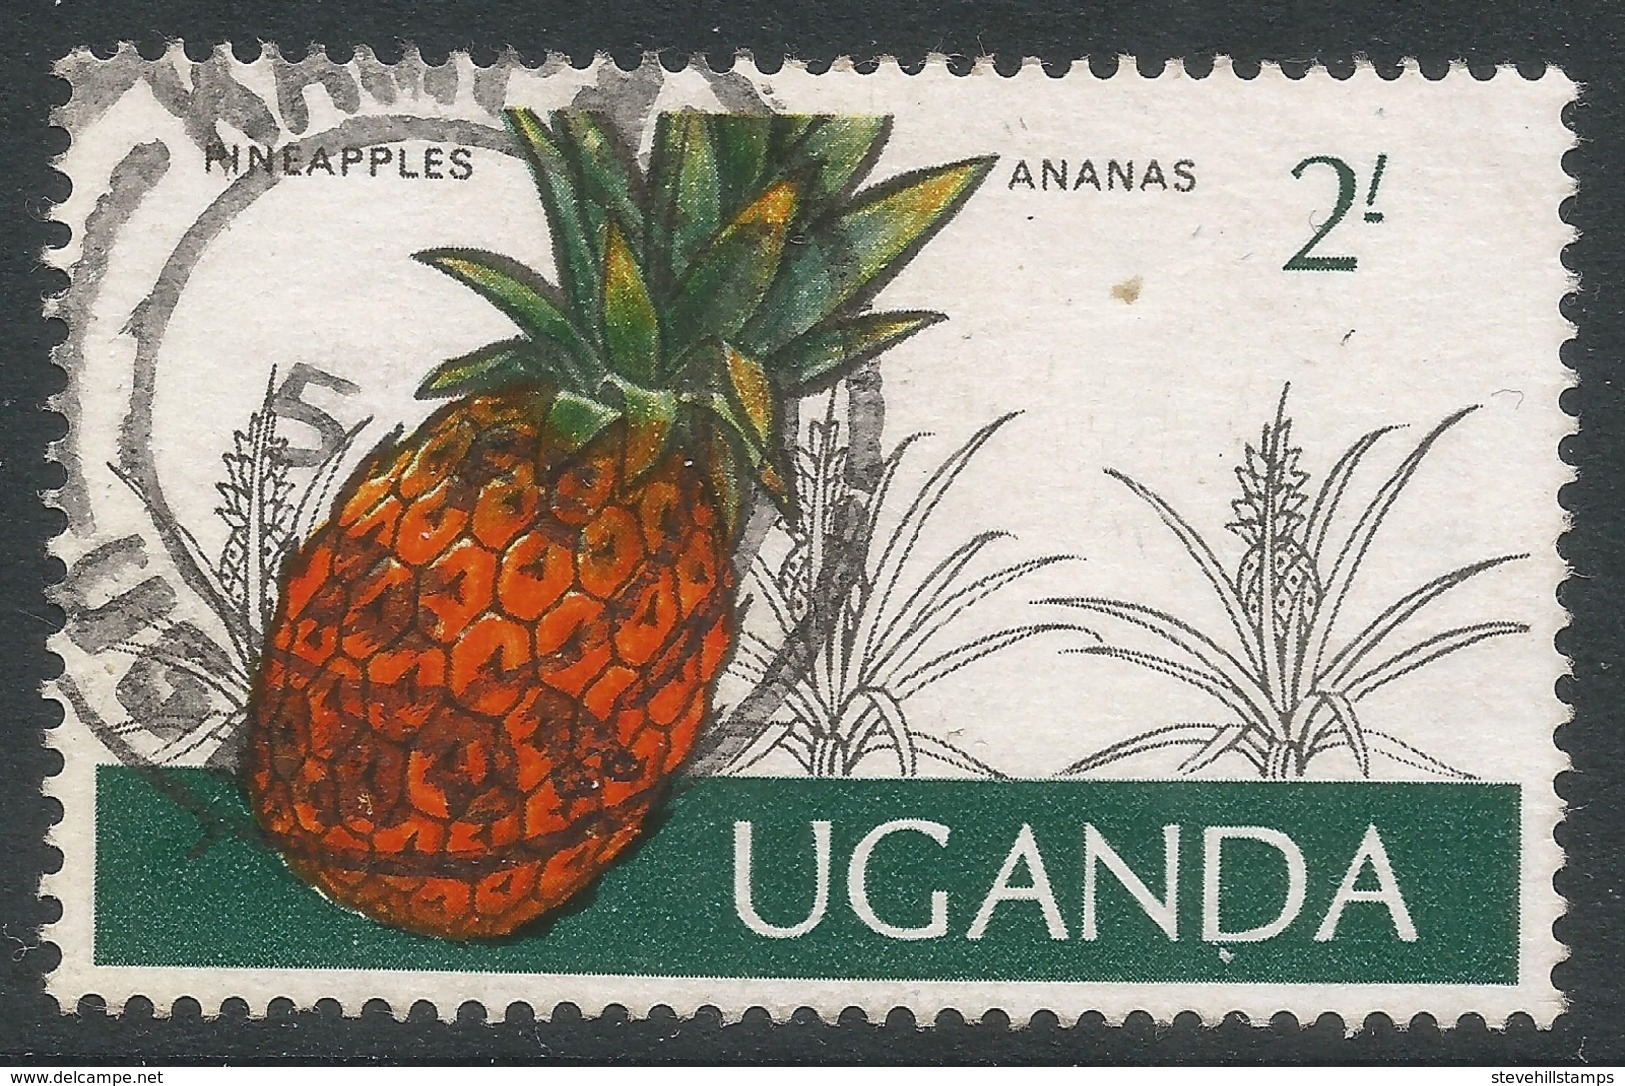 Uganda. 1975 Ugandan Crops. 2/- Used. SG 157 - Uganda (1962-...)